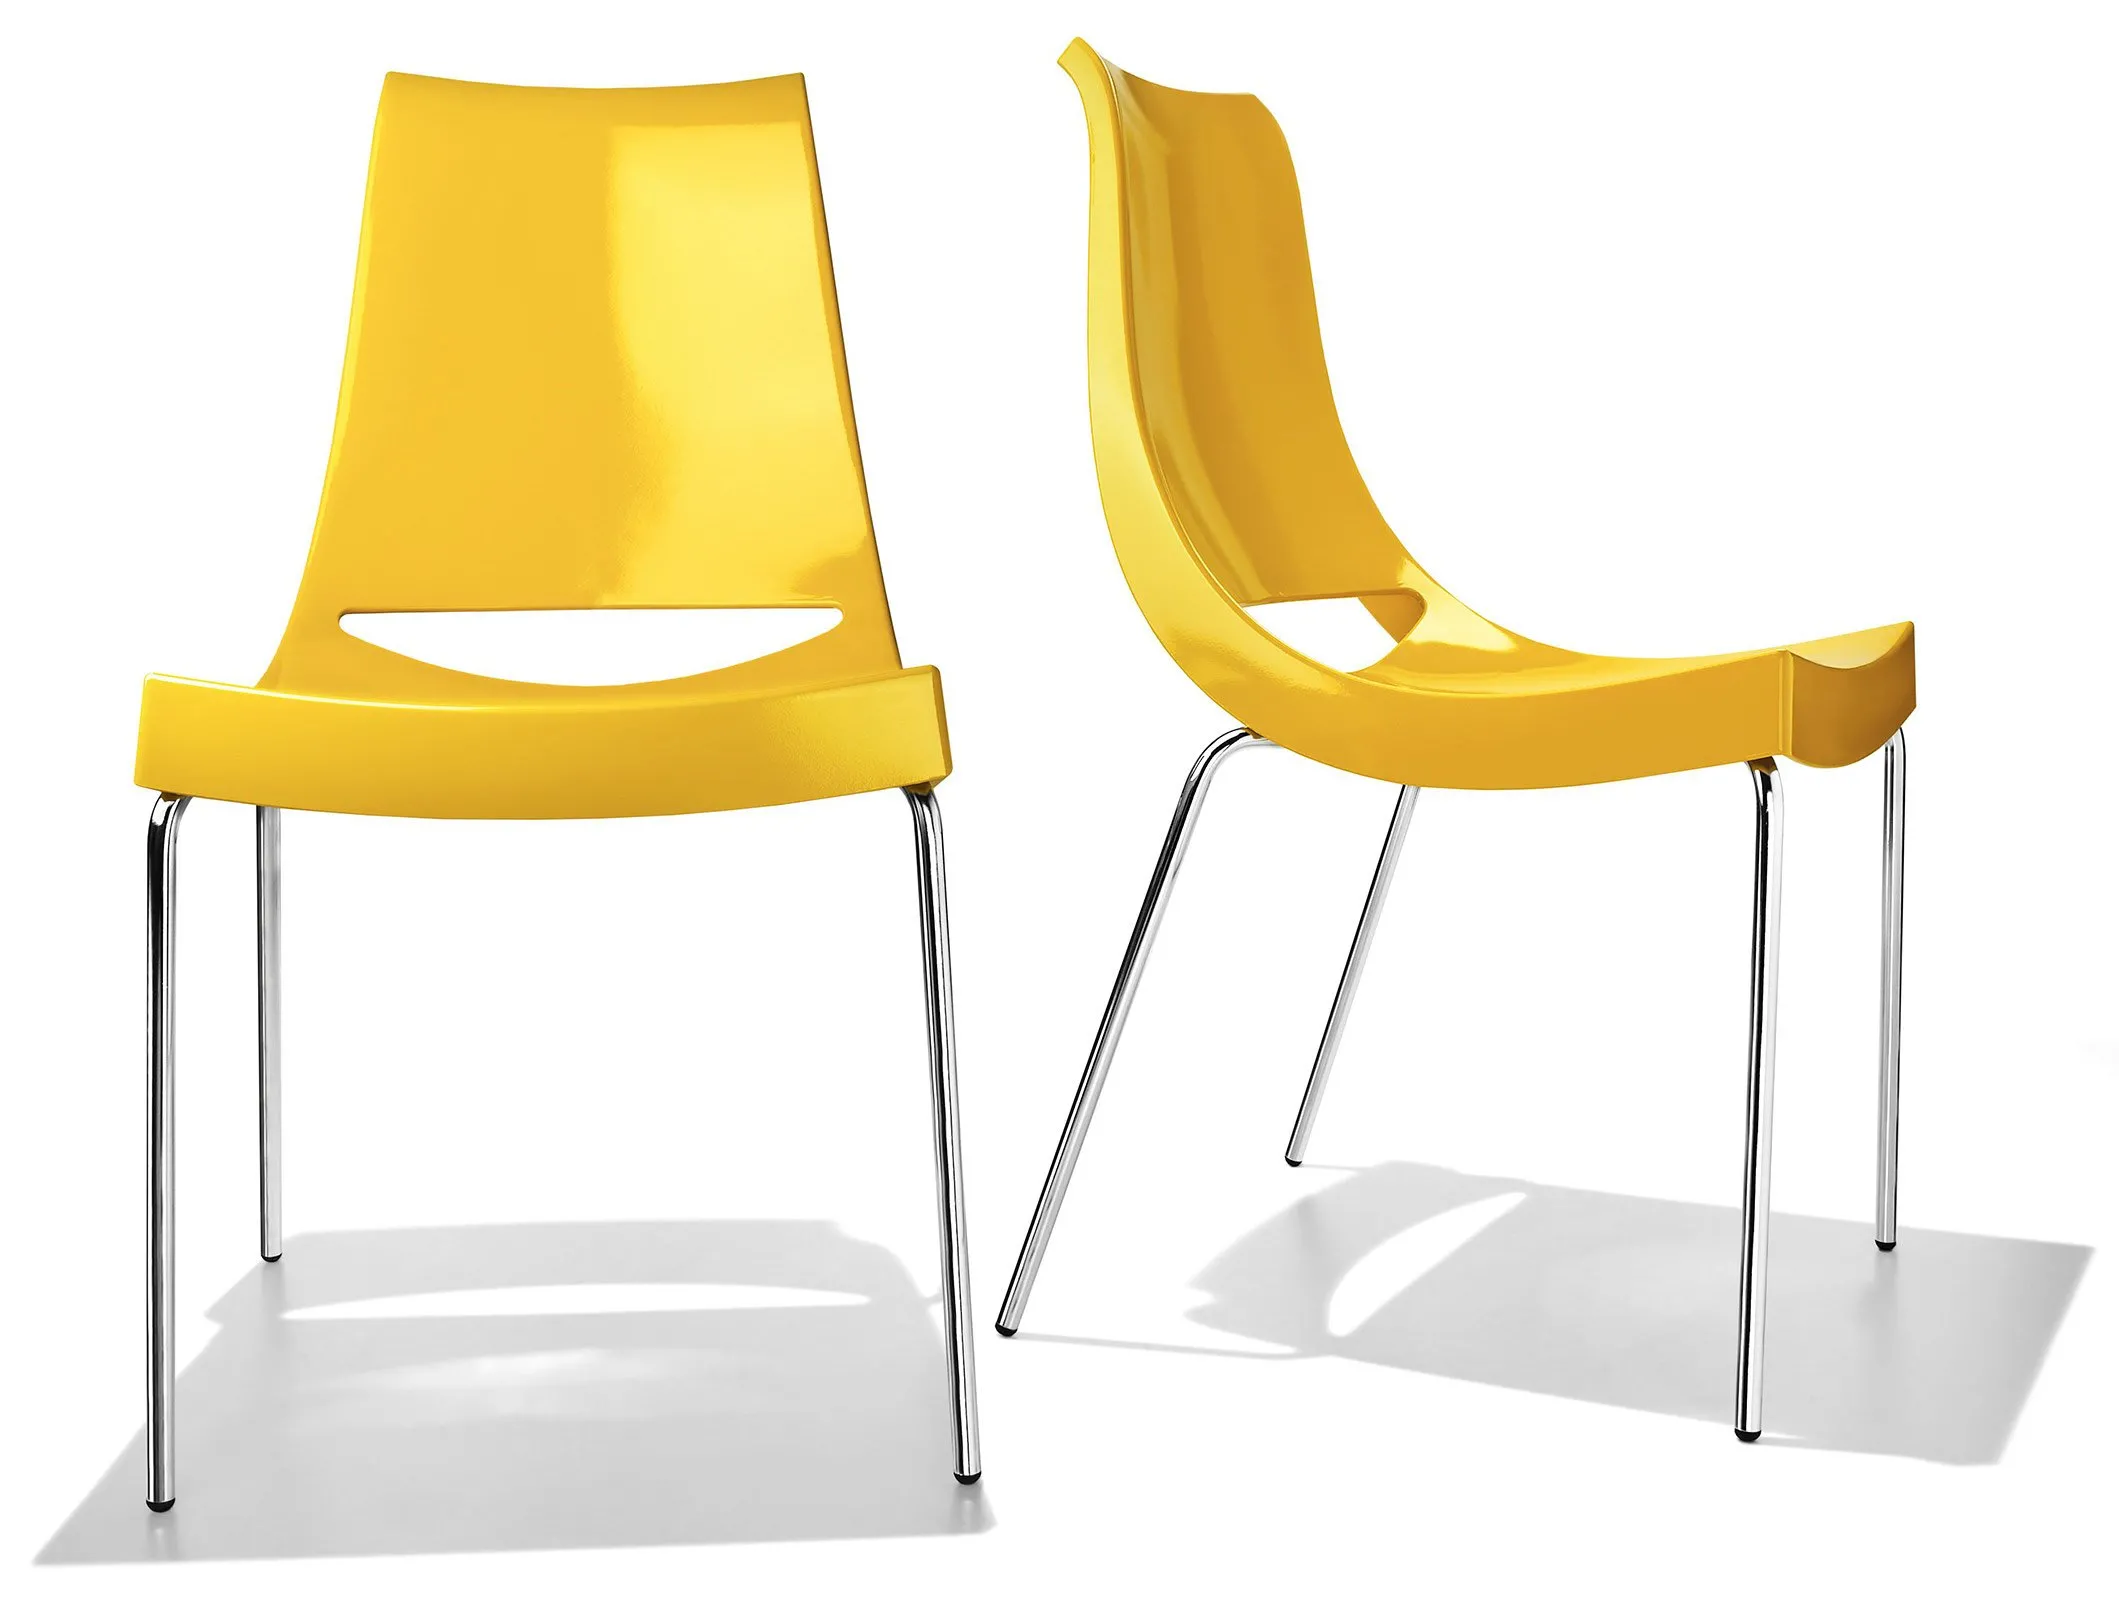 Tre idee per abbinare le sedie colorate in polipropilene nel tuo